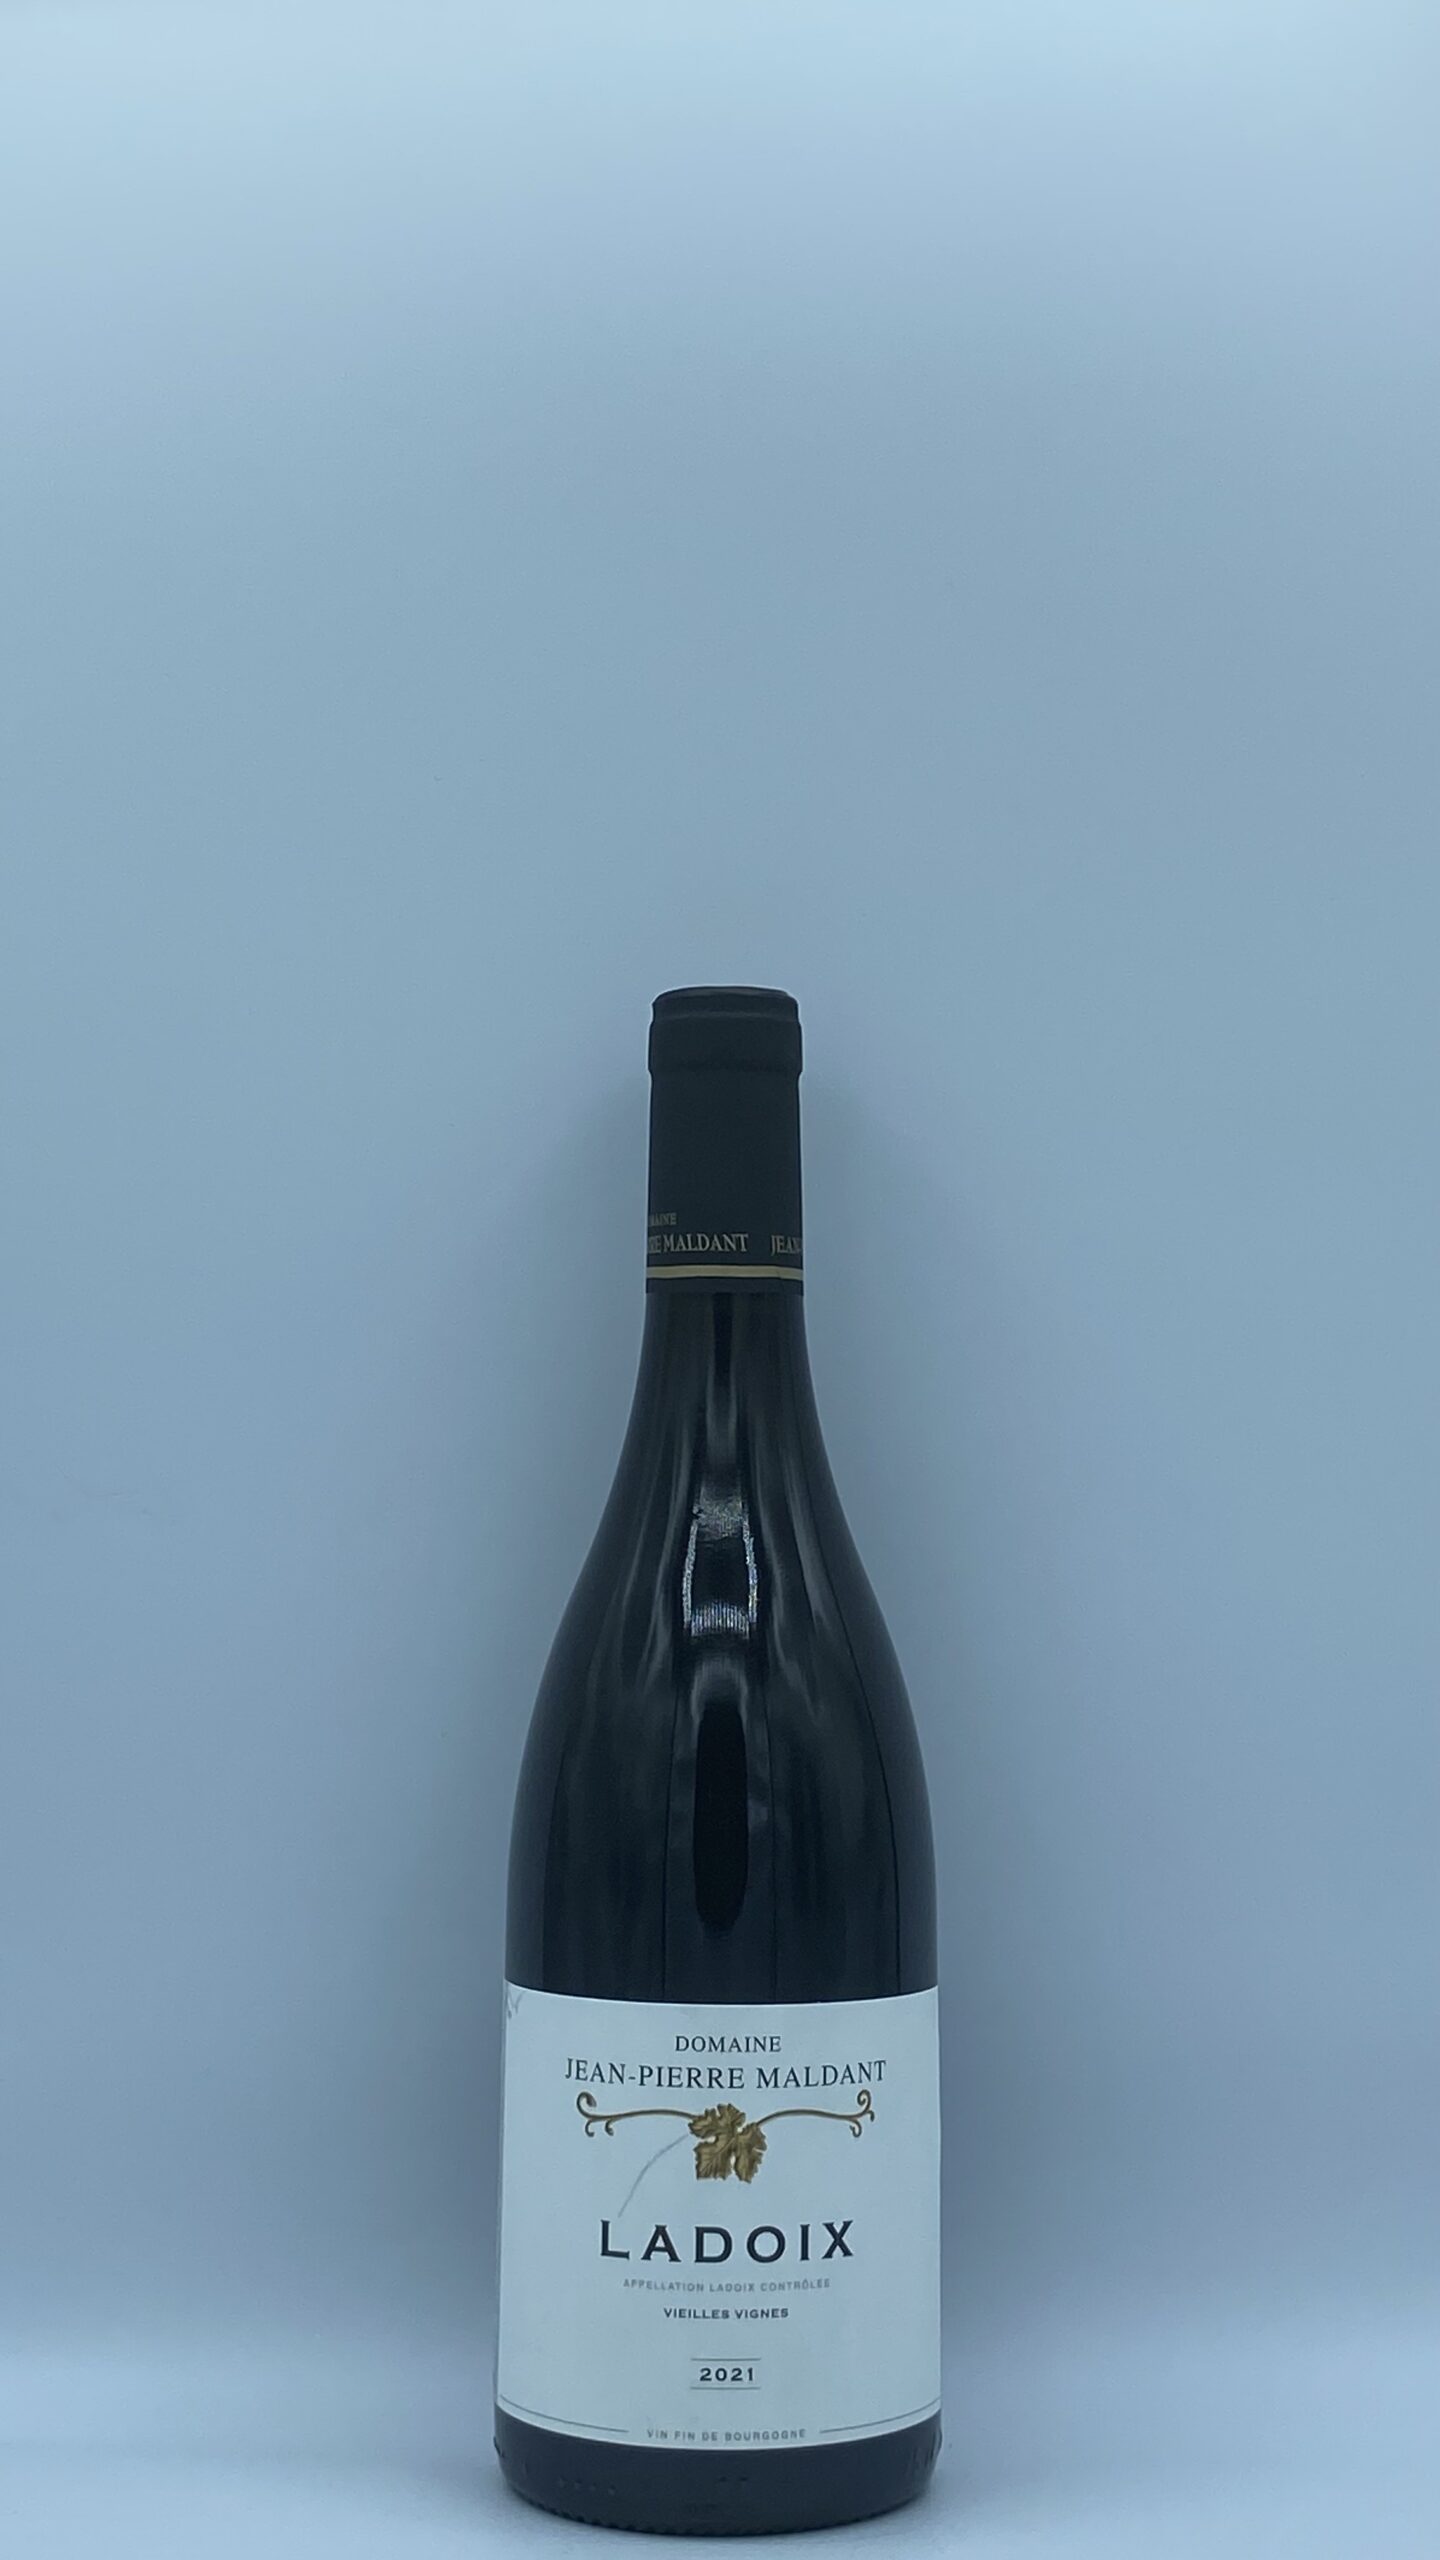 Bourgogne Ladoix “Vieilles Vignes” 2021 Jean Pierre Maldant